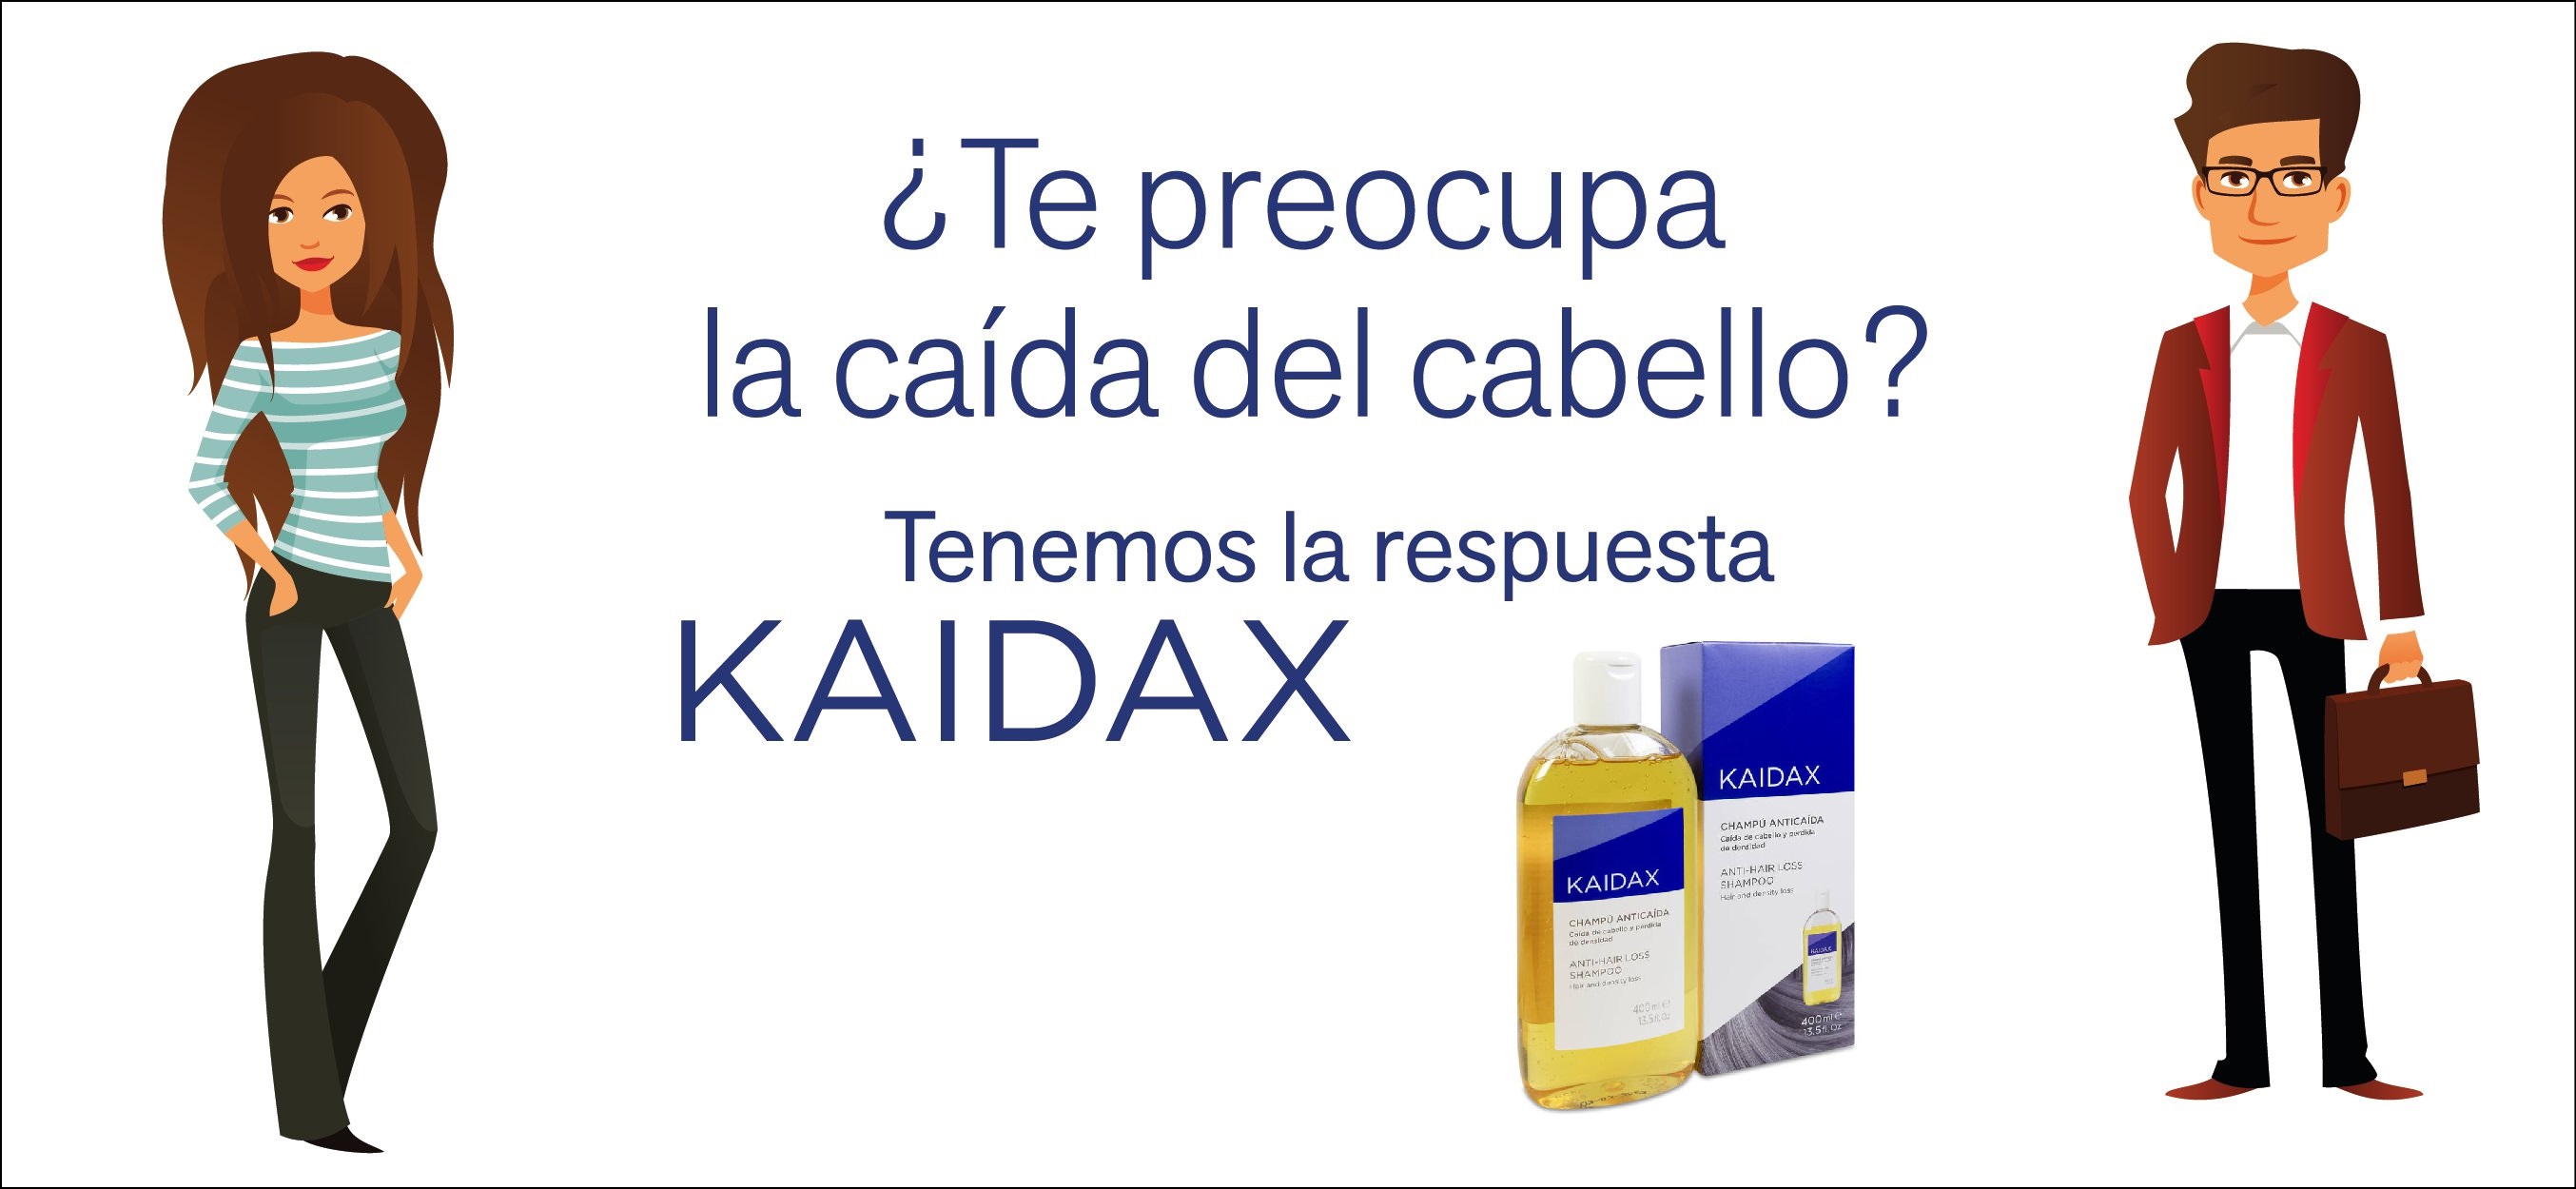 KAIDAX anti-hair loss